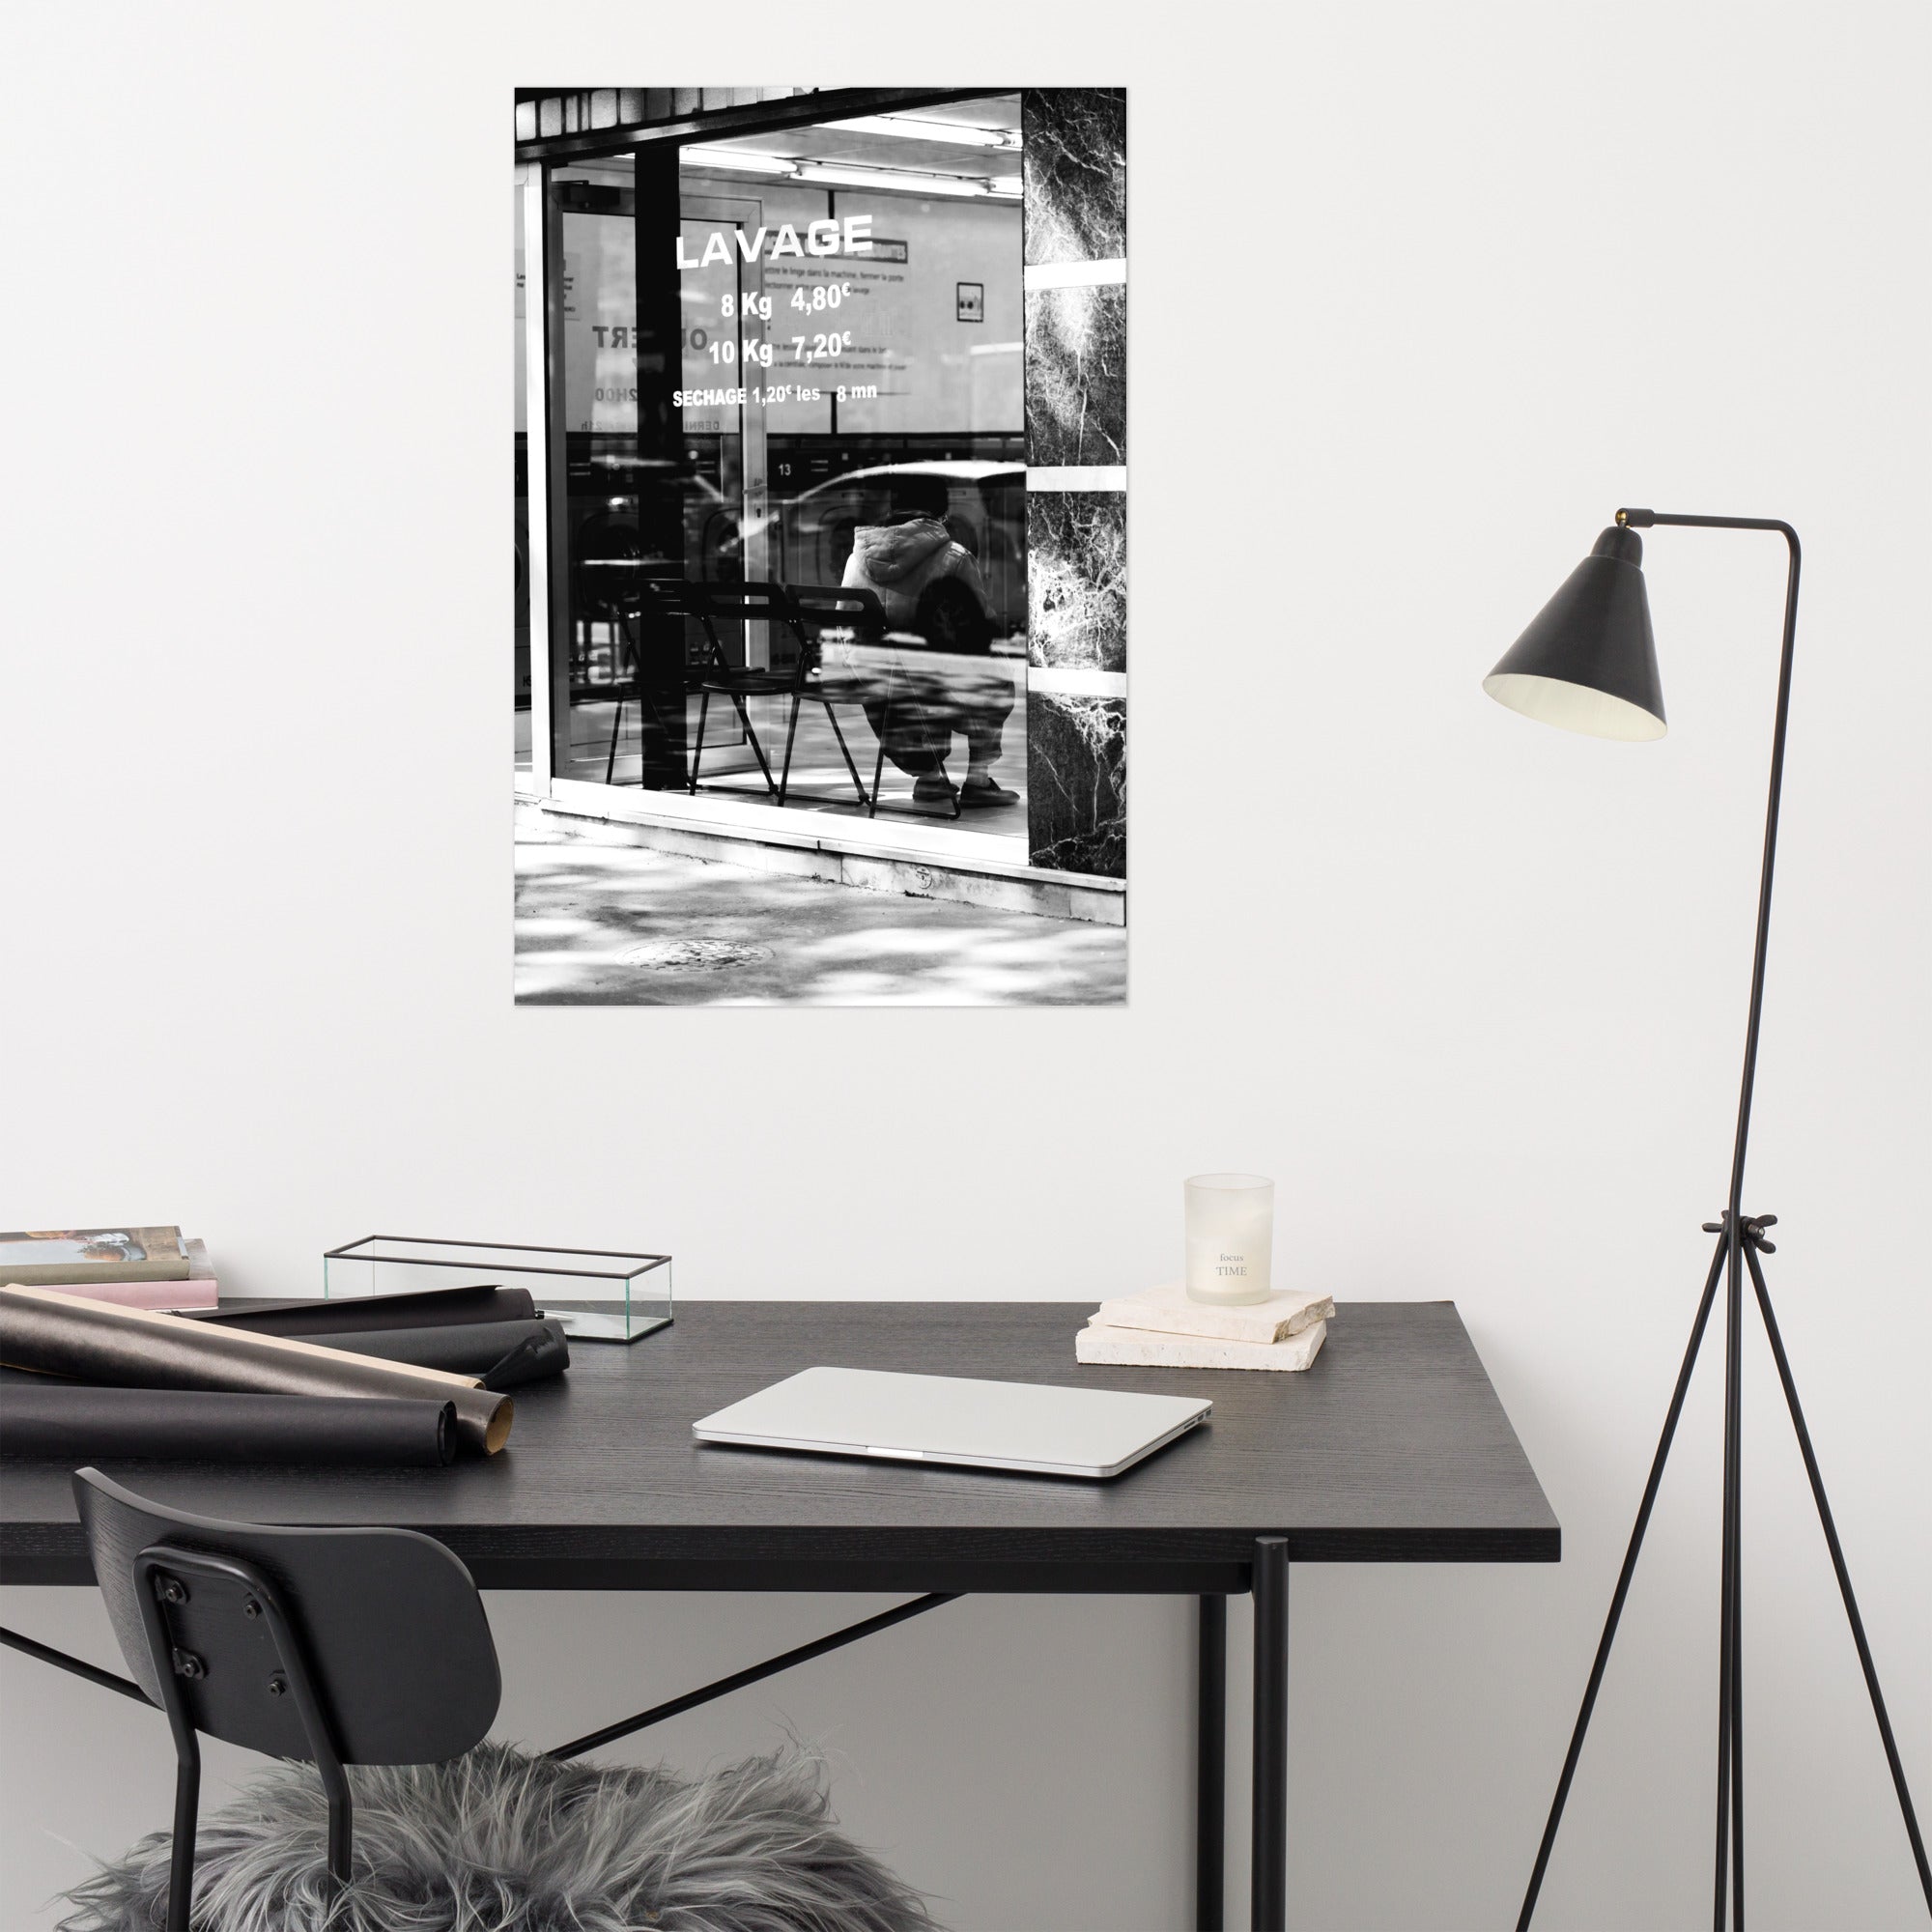 Photographie 'Lavage' en noir et blanc de l'intérieur d'une laverie urbaine.